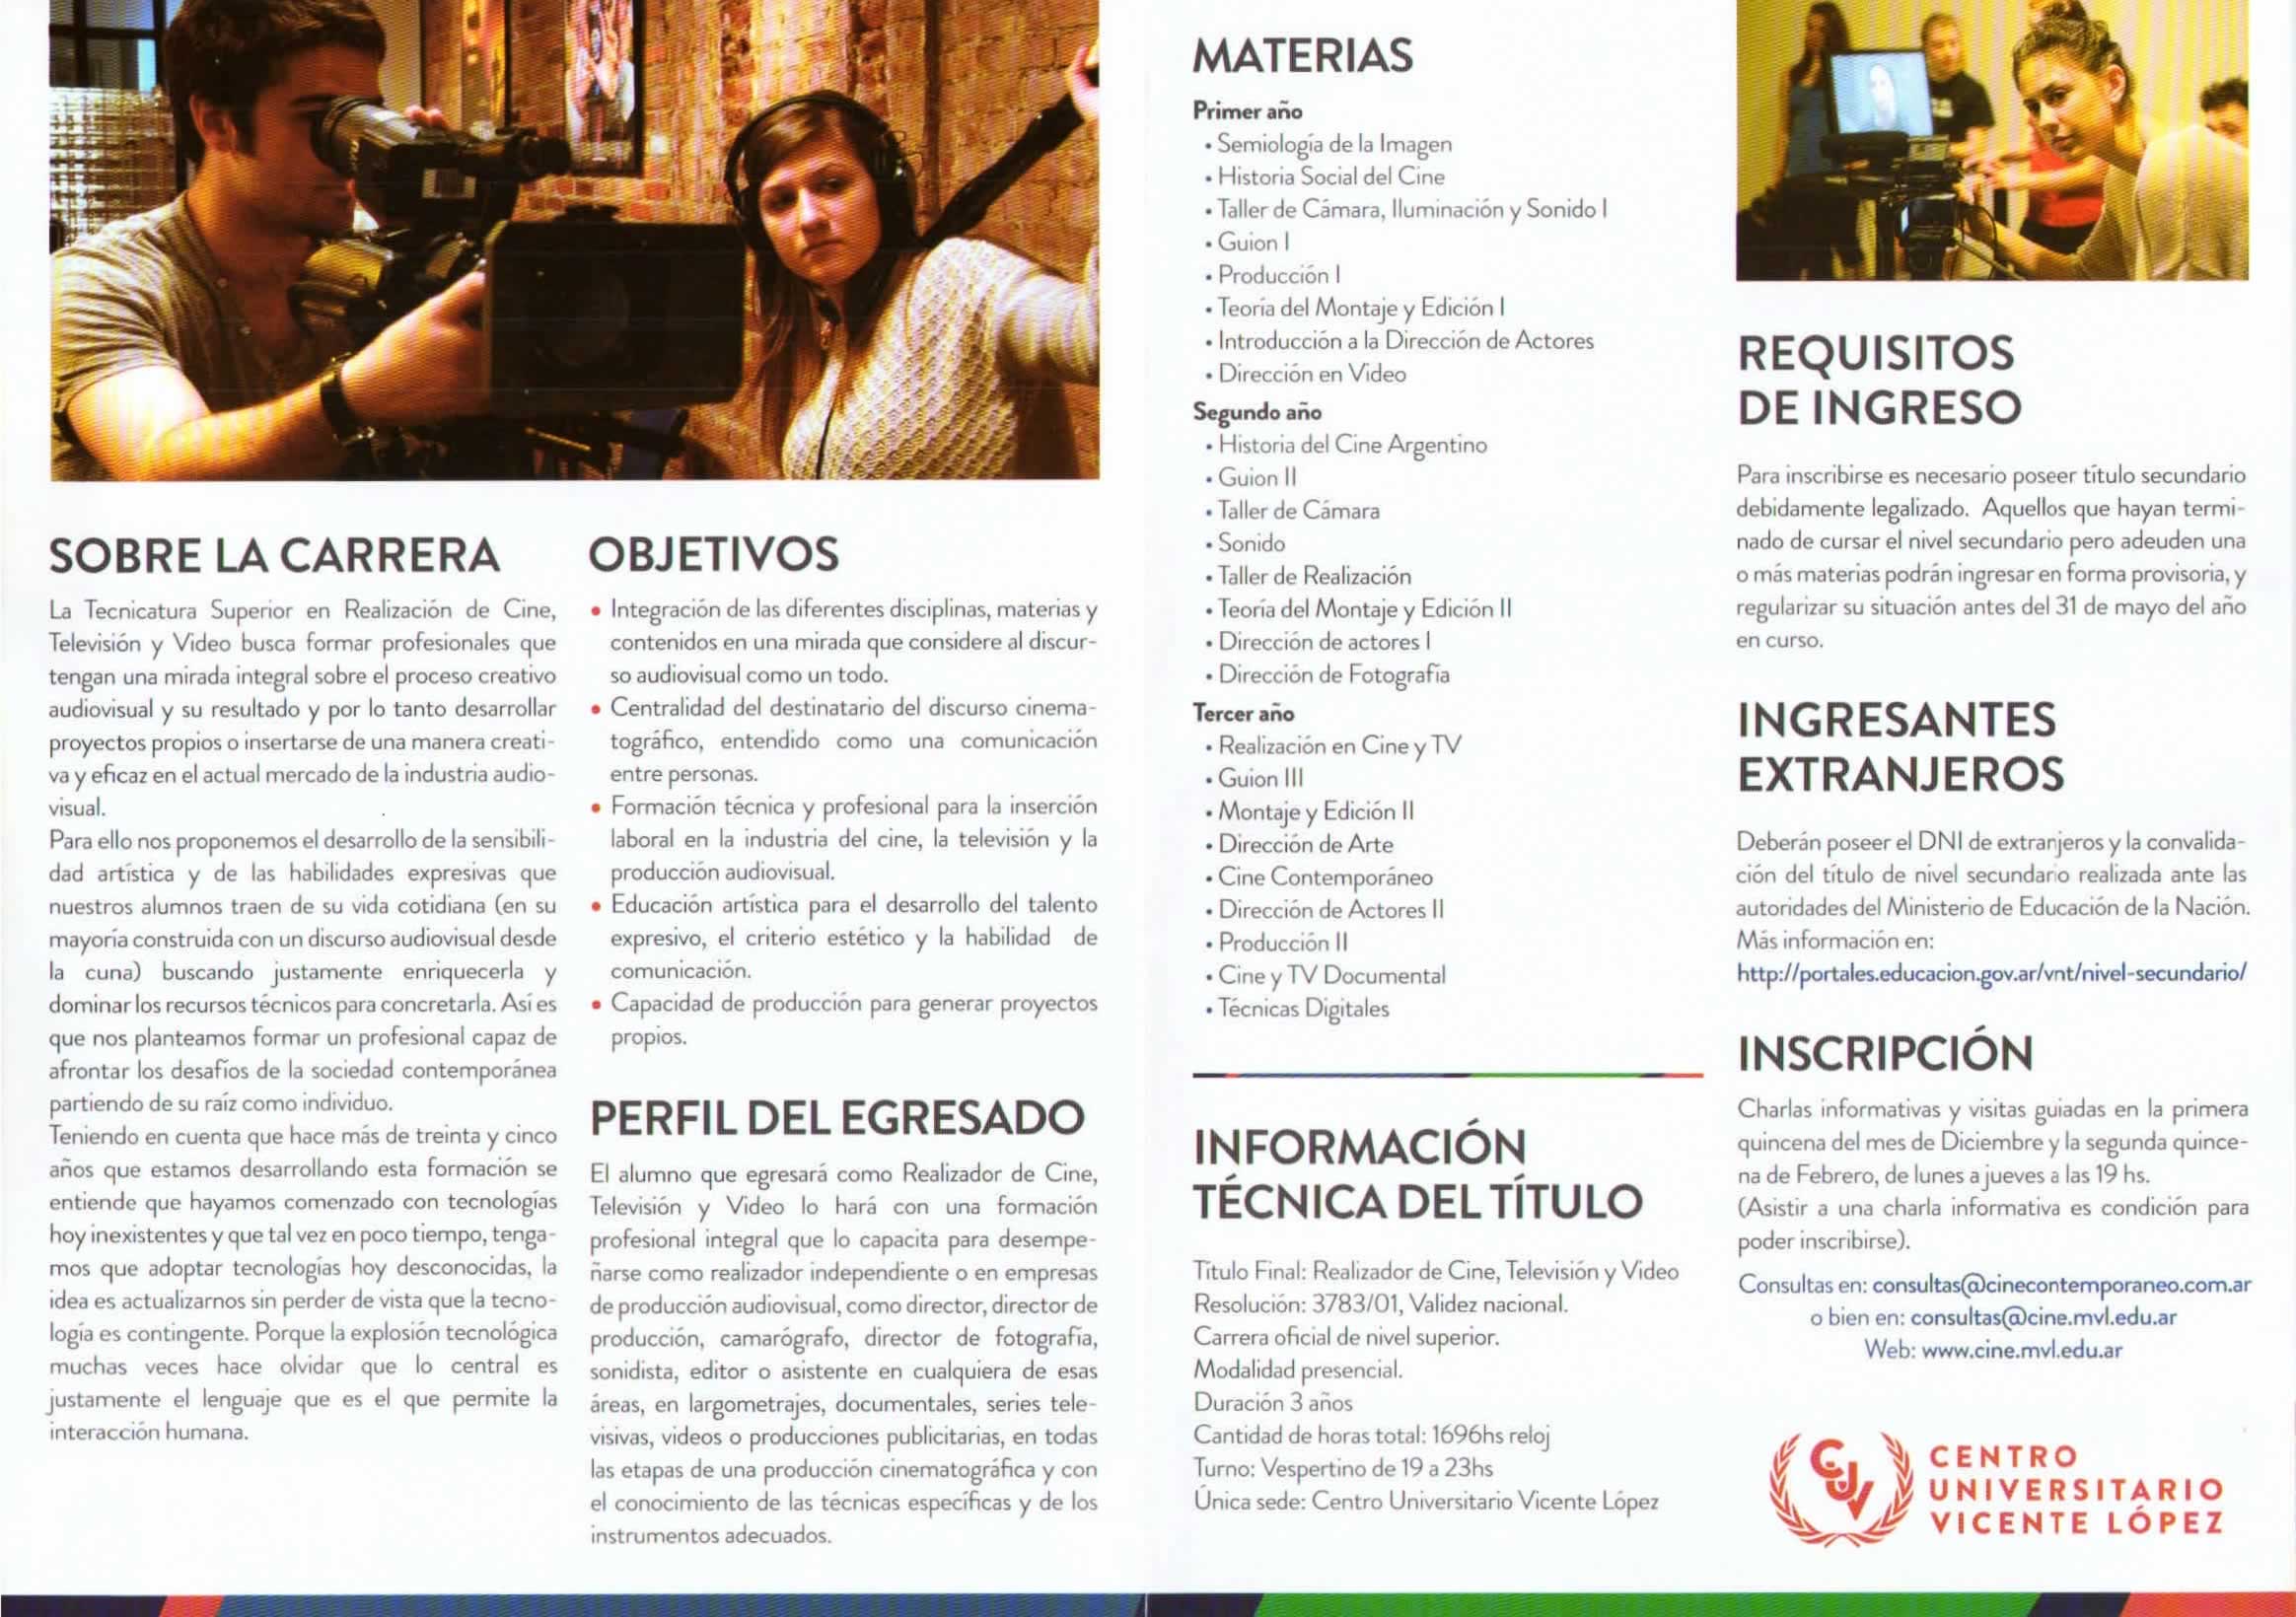 Tecnicatura en Realización de Cine y Televisión y Video del CUV obtenido durante la #rutansqe en la 4ta. Expo Universidad de Vicente López.